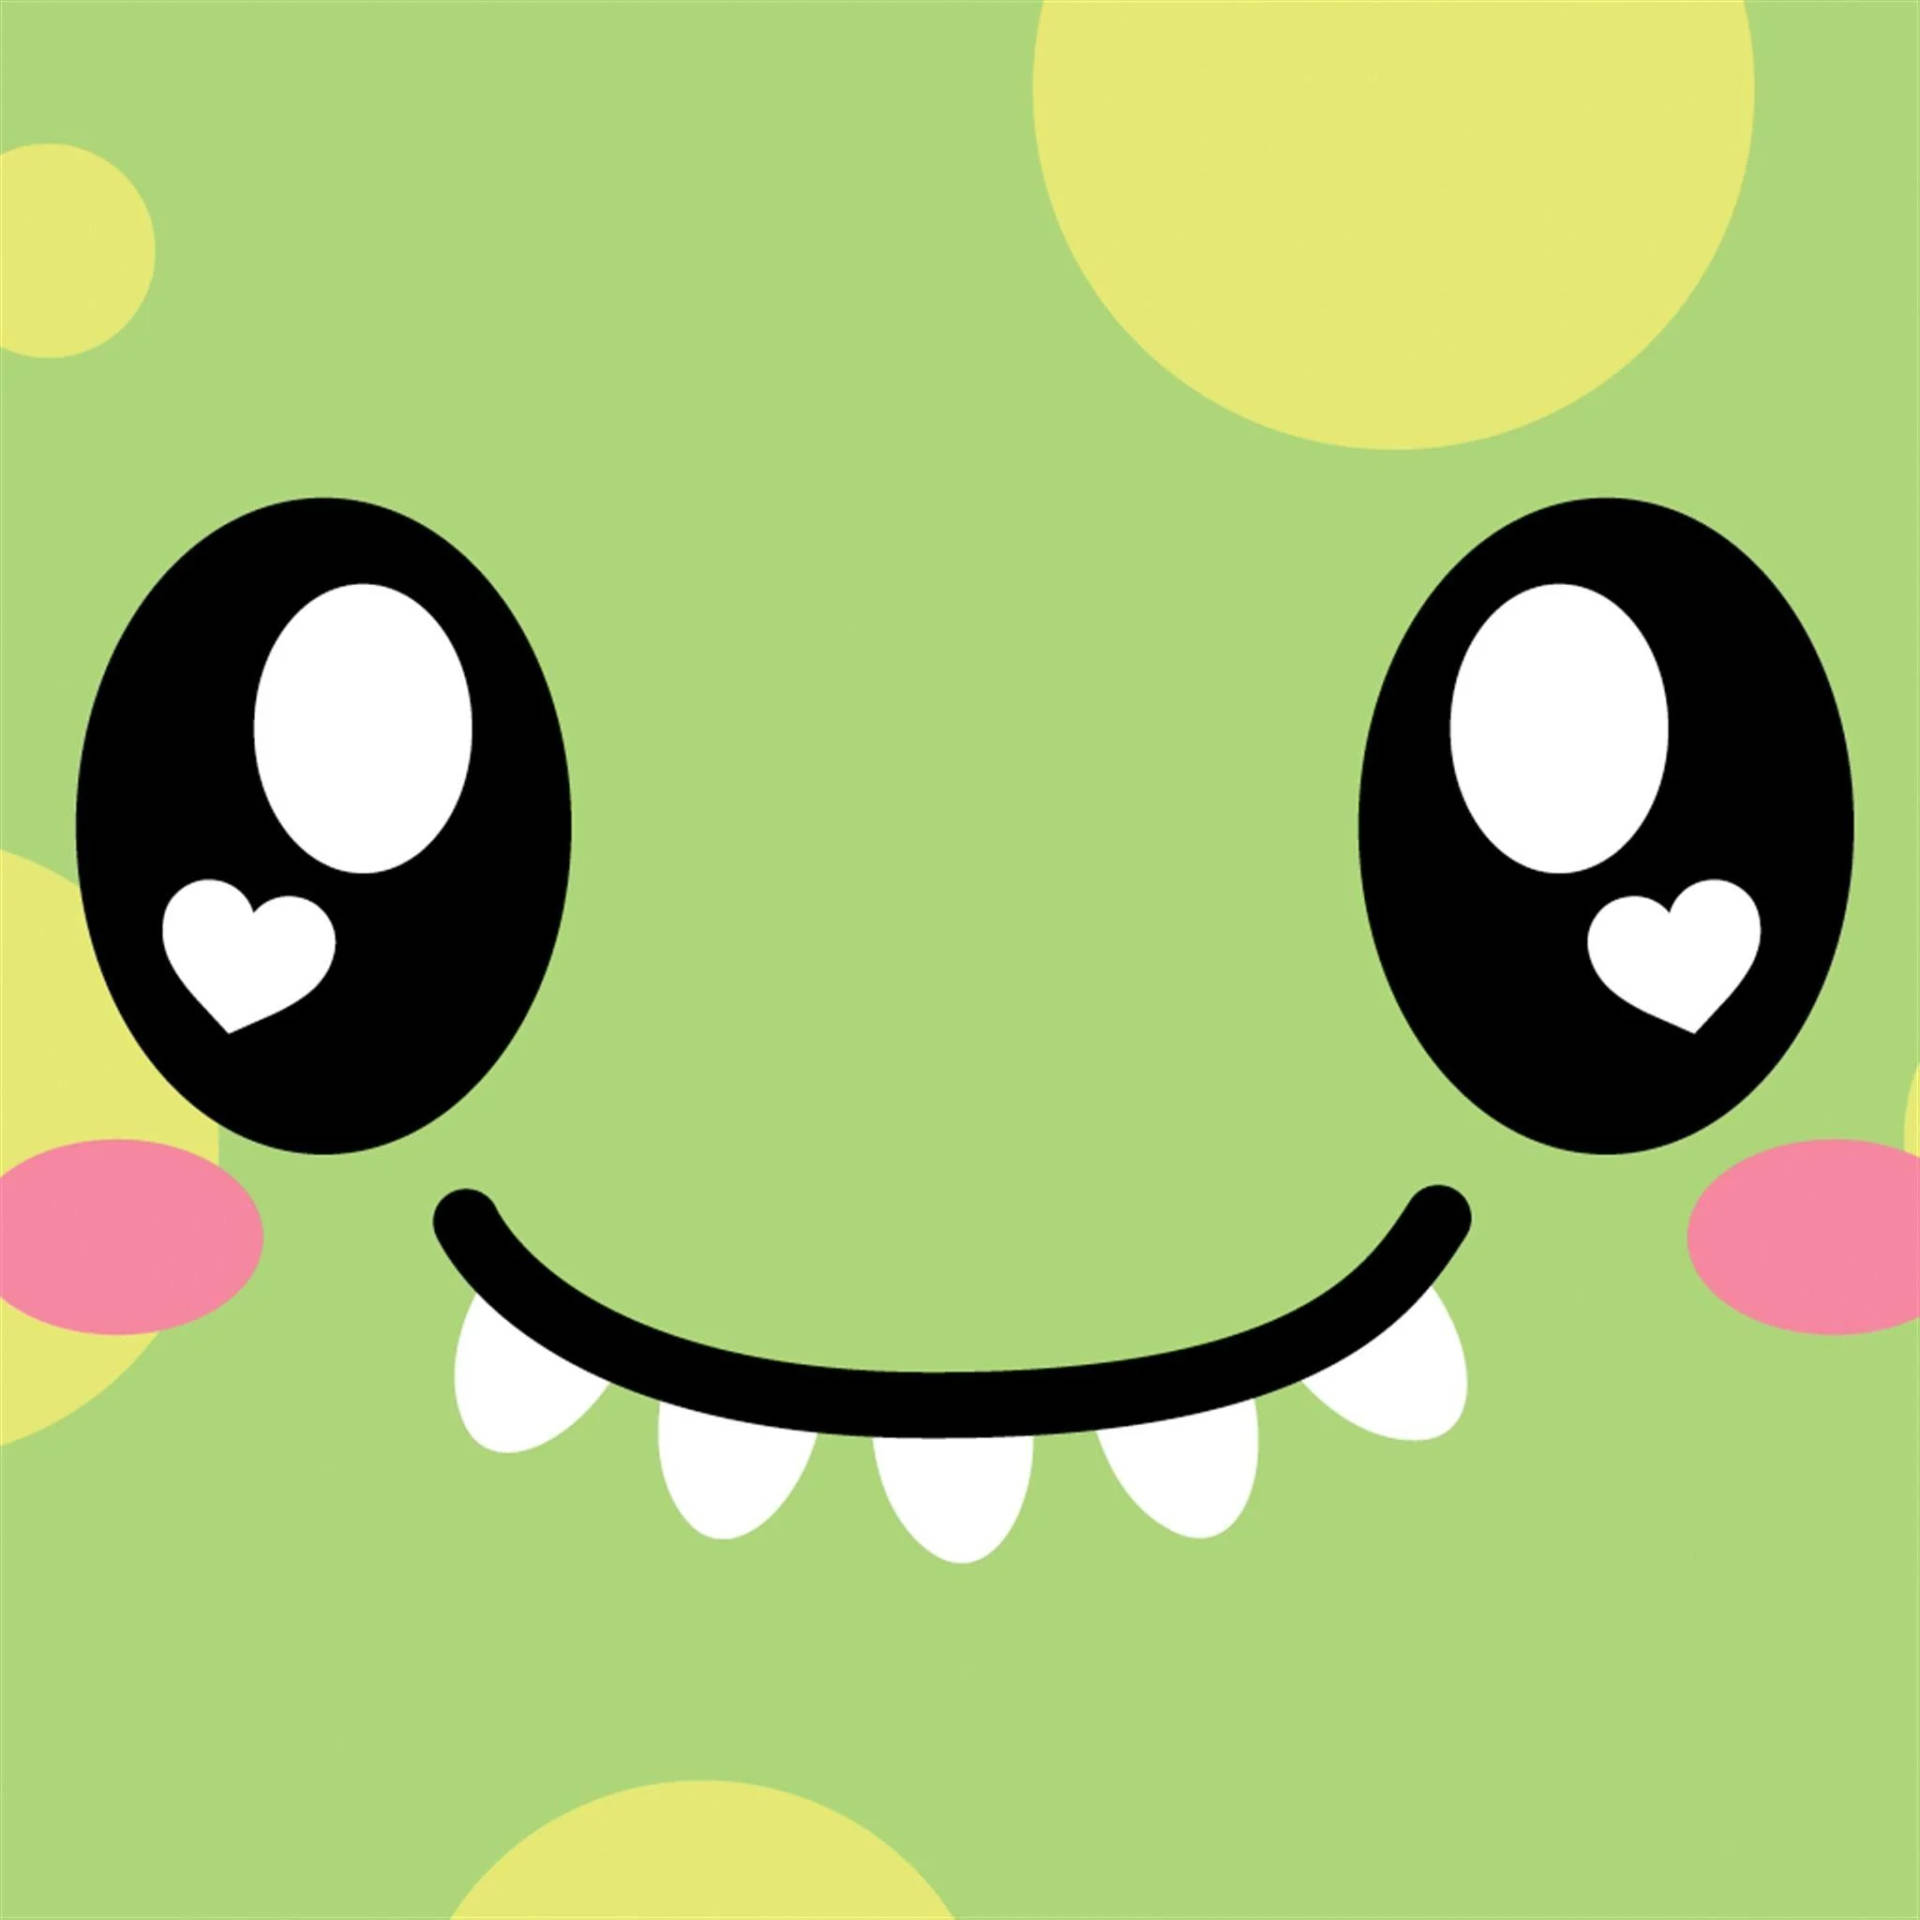 Ipad Pro Cute Dinosaur's Face Wallpaper